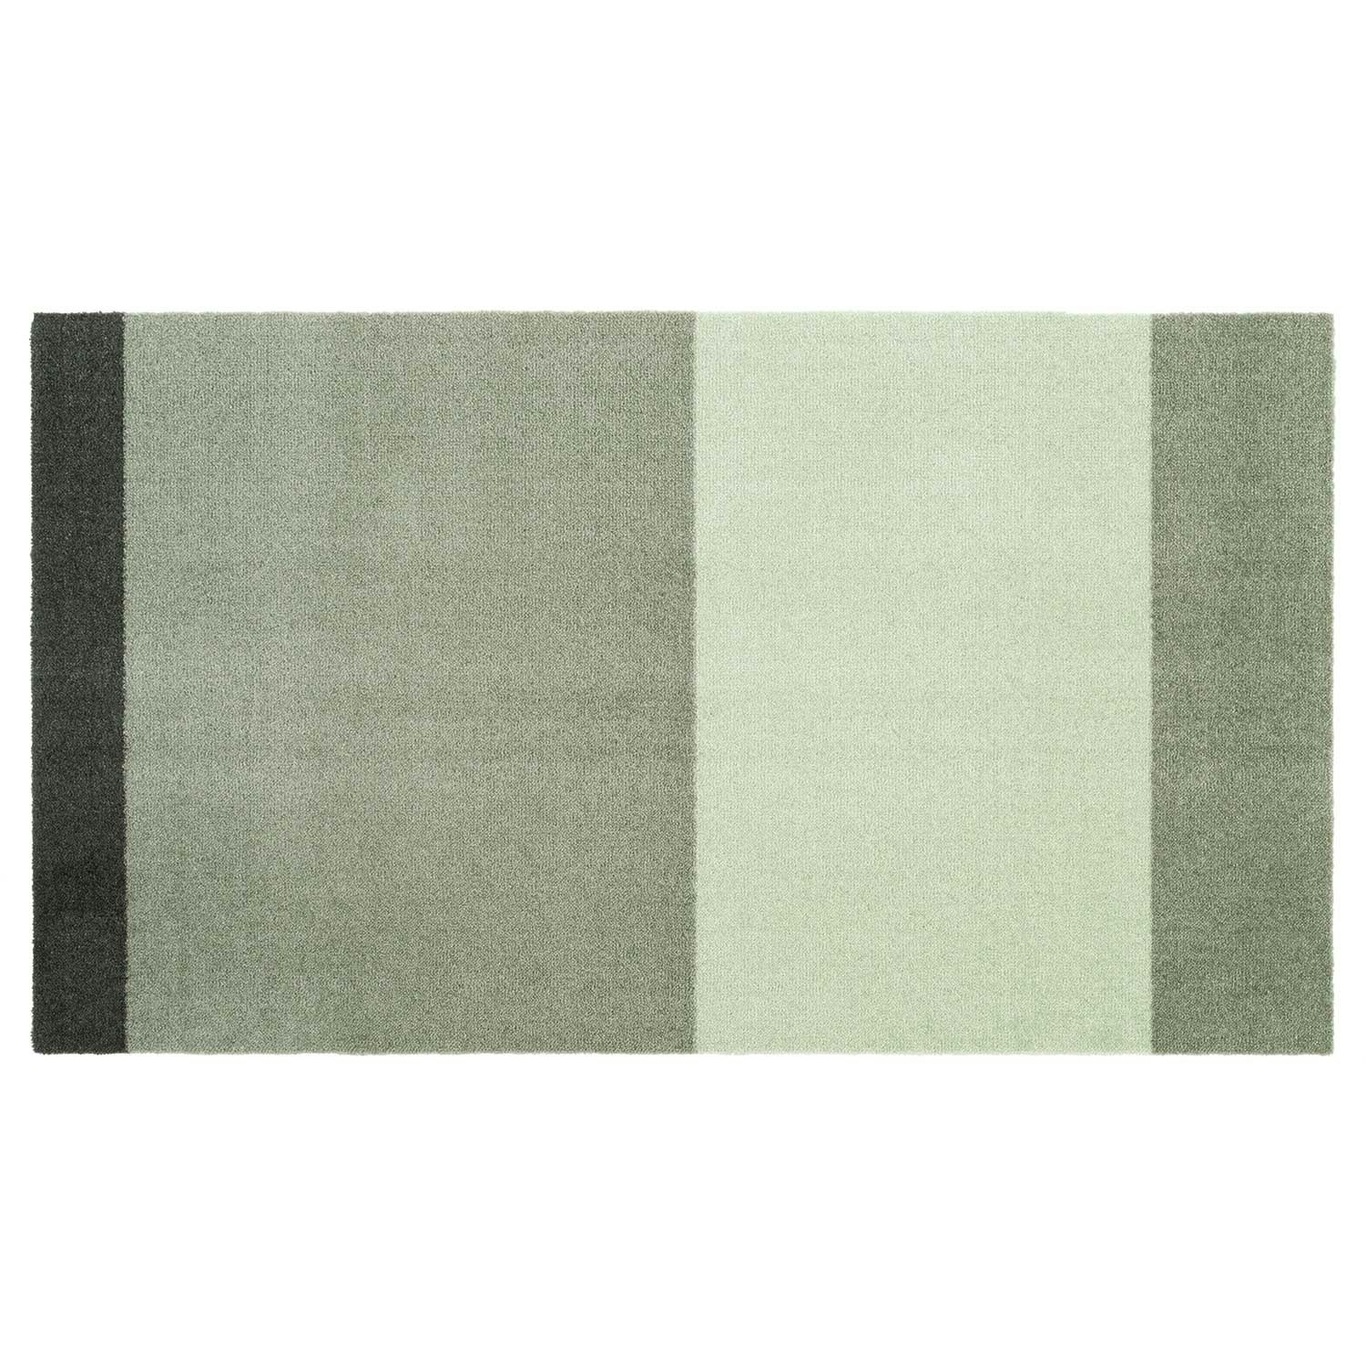 Stripes Matto Vaaleanvihreä / Tummanvihreä, 67x120 cm